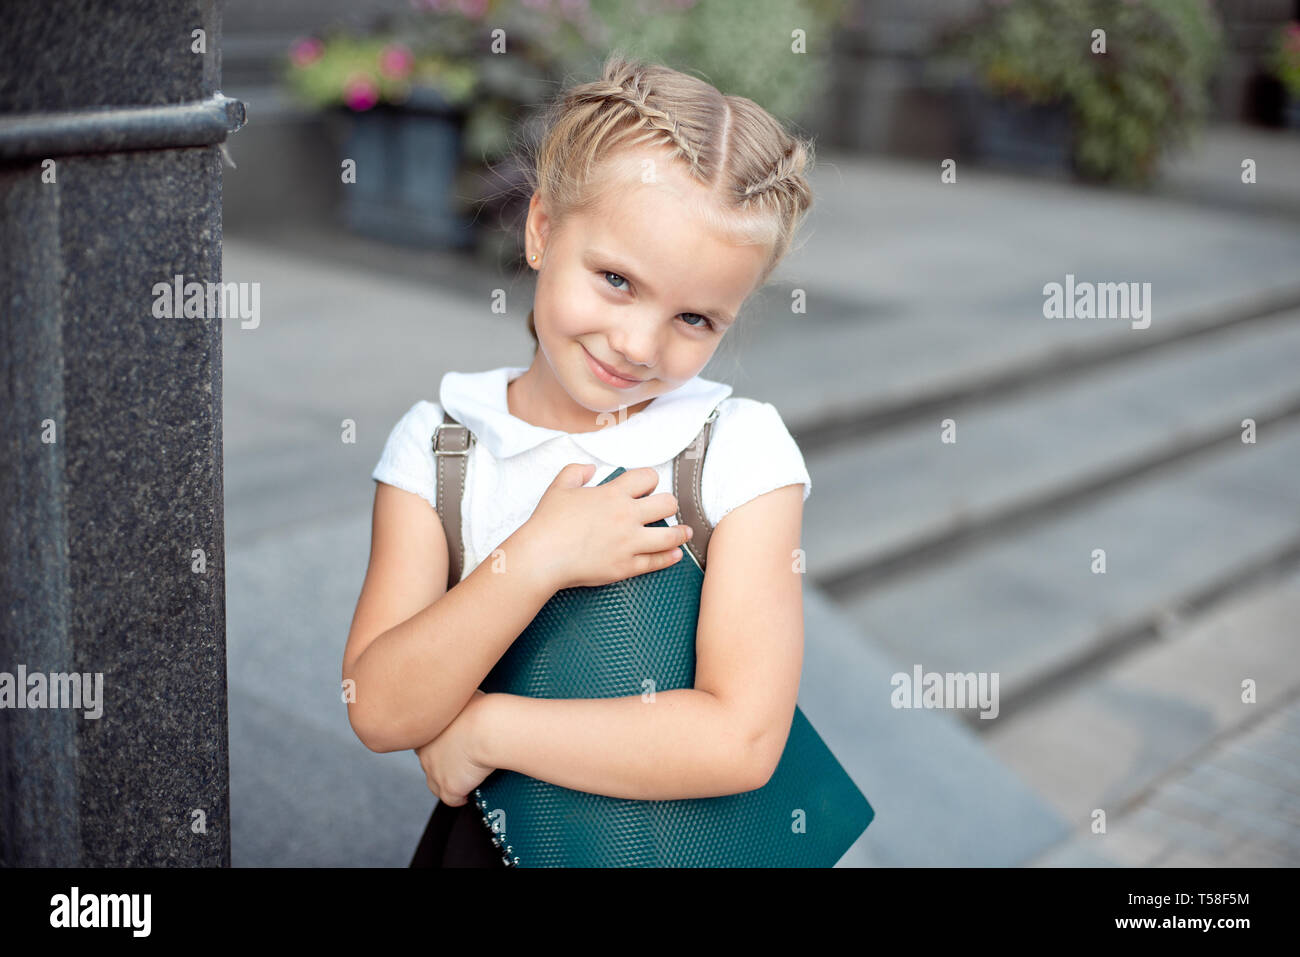 Happy little schoolgirl with book going back to school outdoor Stock Photo